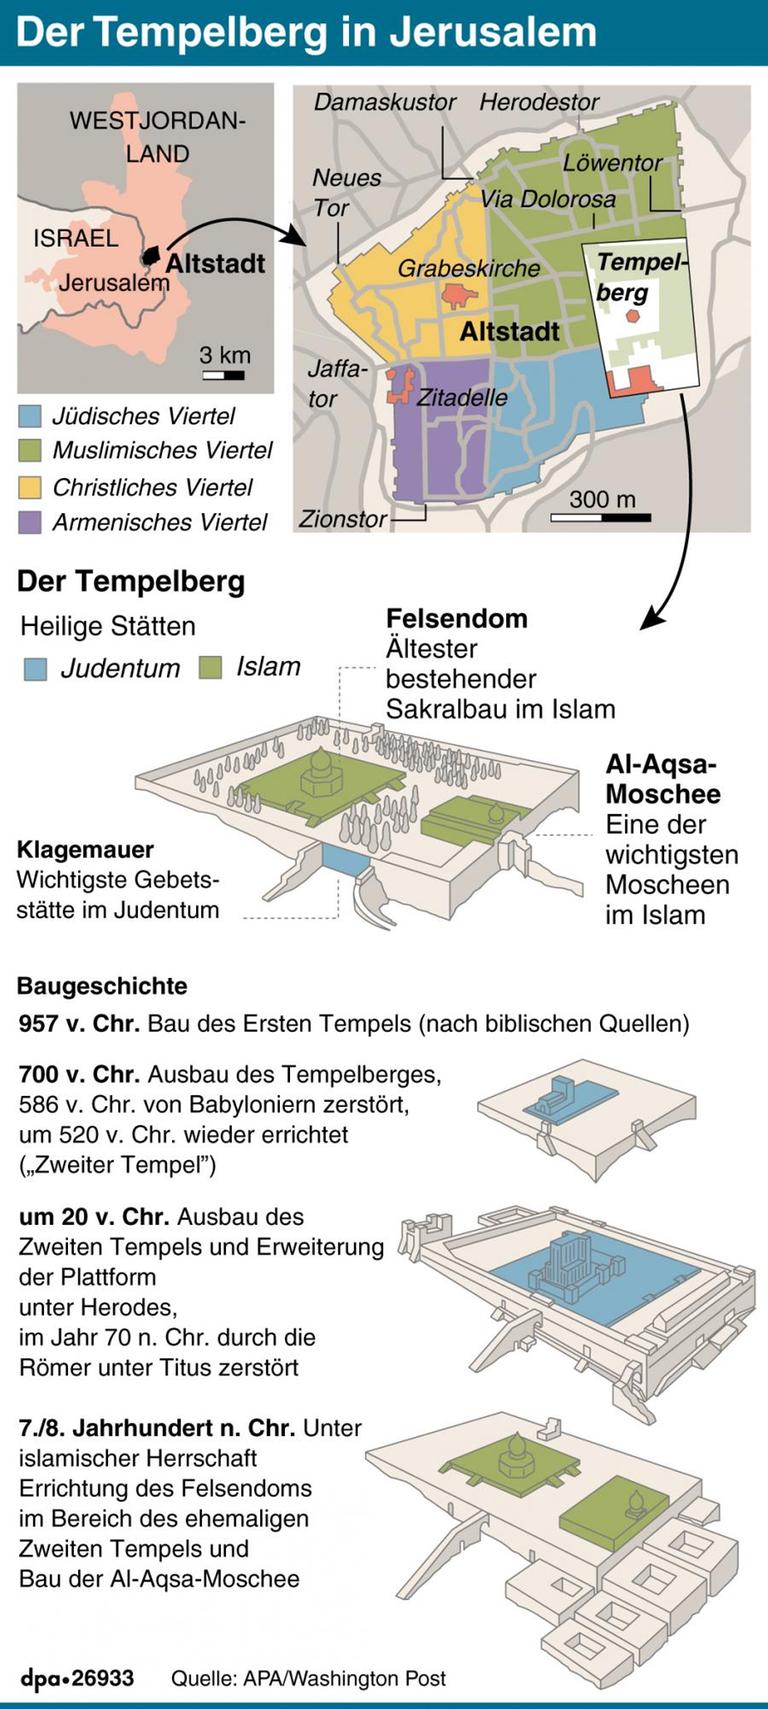 Übersichtskarten und Schemazeichnung des Tempelbergs in Jerusalem